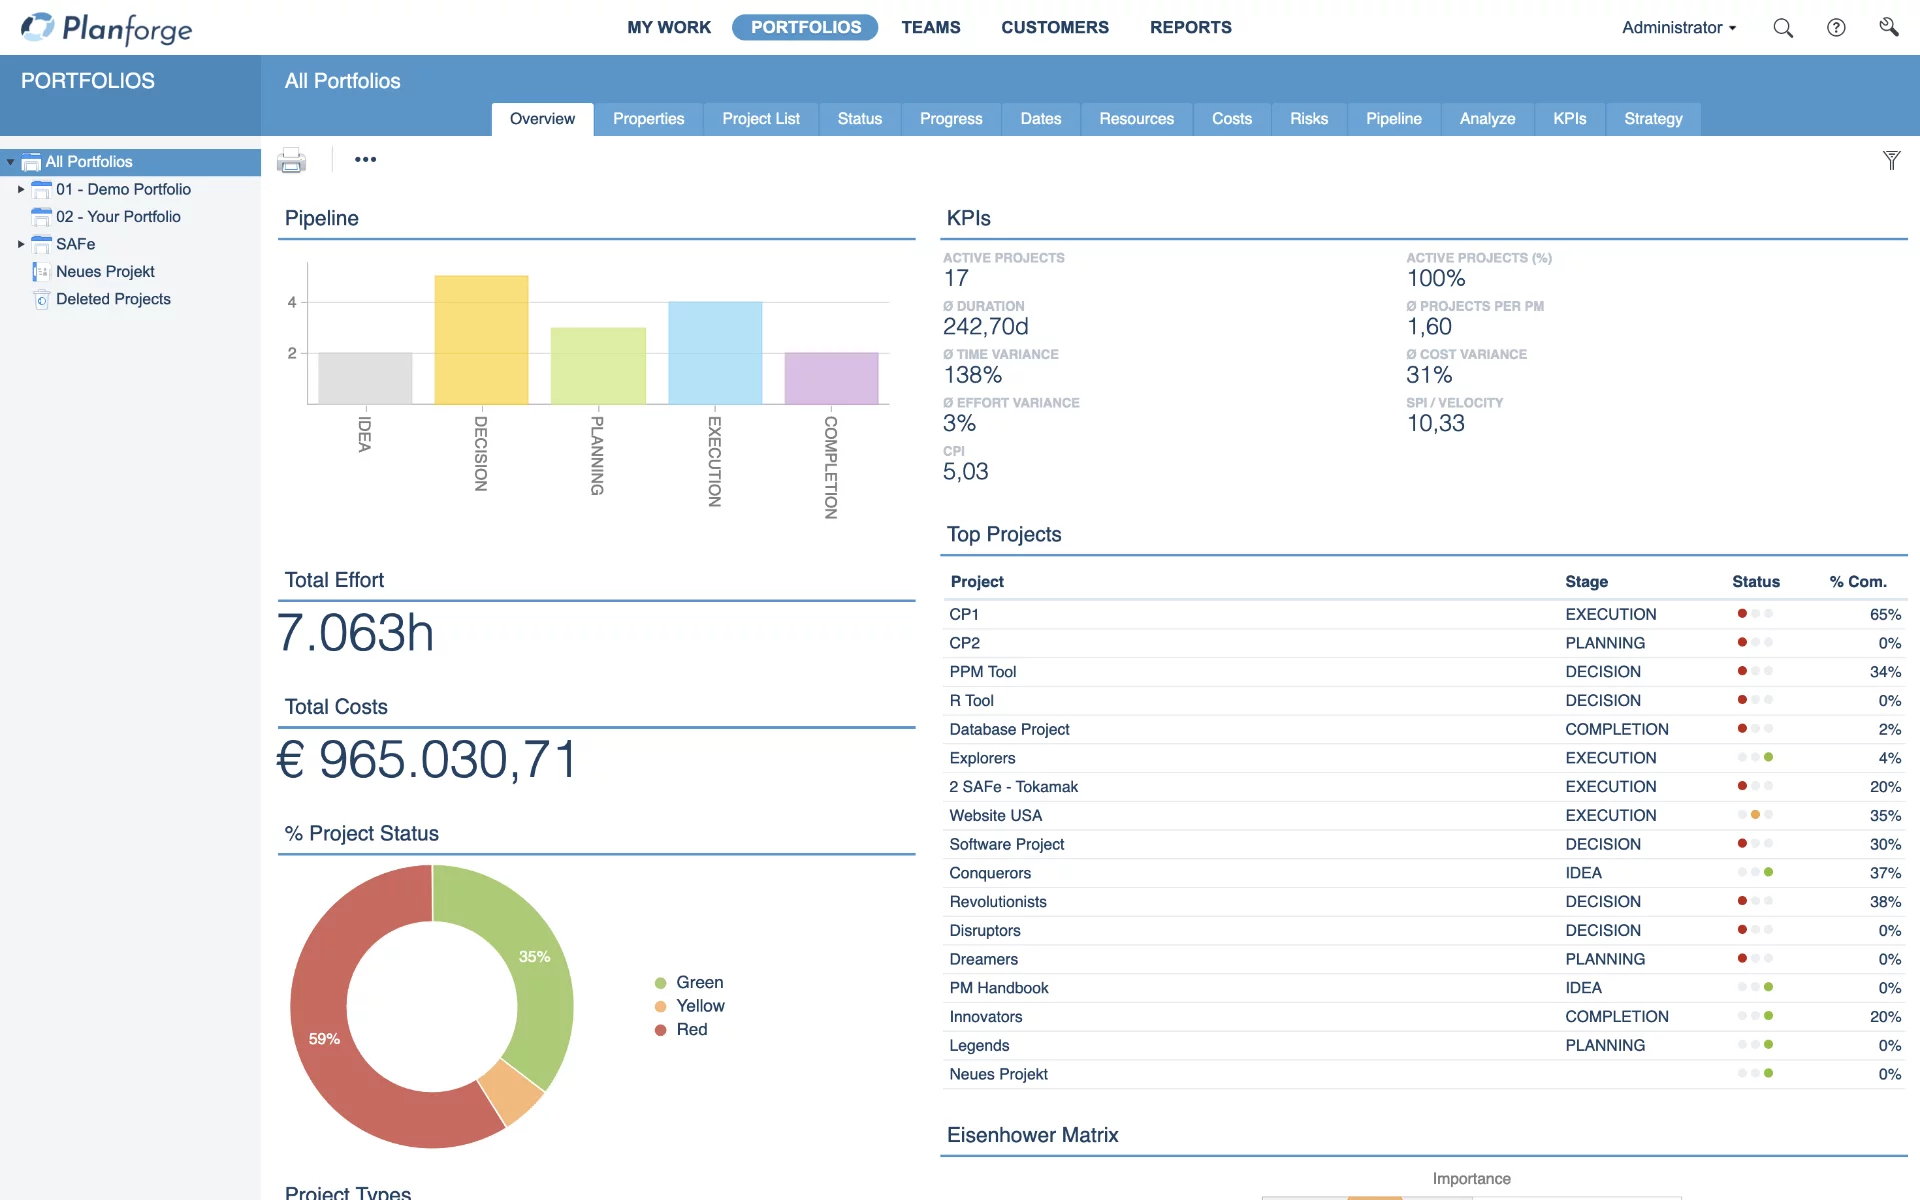 Portfolio-Management-Dashboard-Portfolio-Analysis-Software-by-Planforge